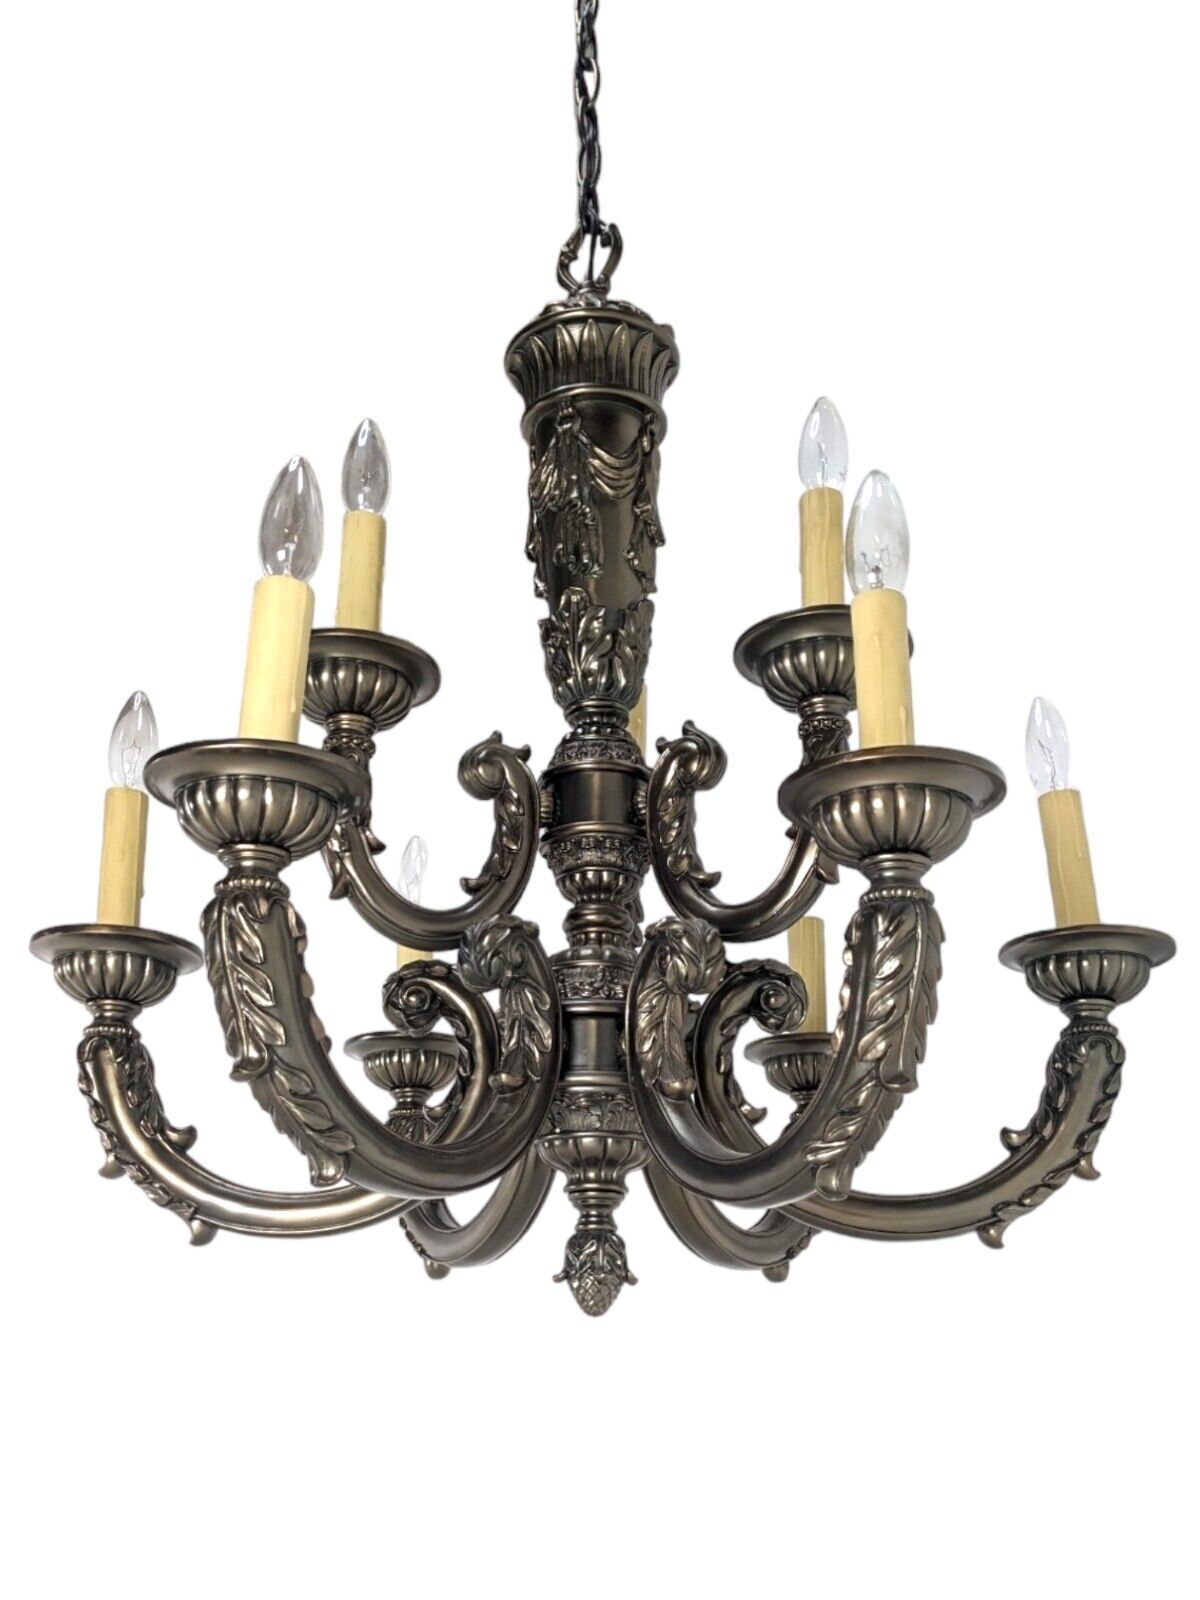 Vintage Louis XVI Style 9 Light Chandelier - Exquisite Detail - Bronze Colored